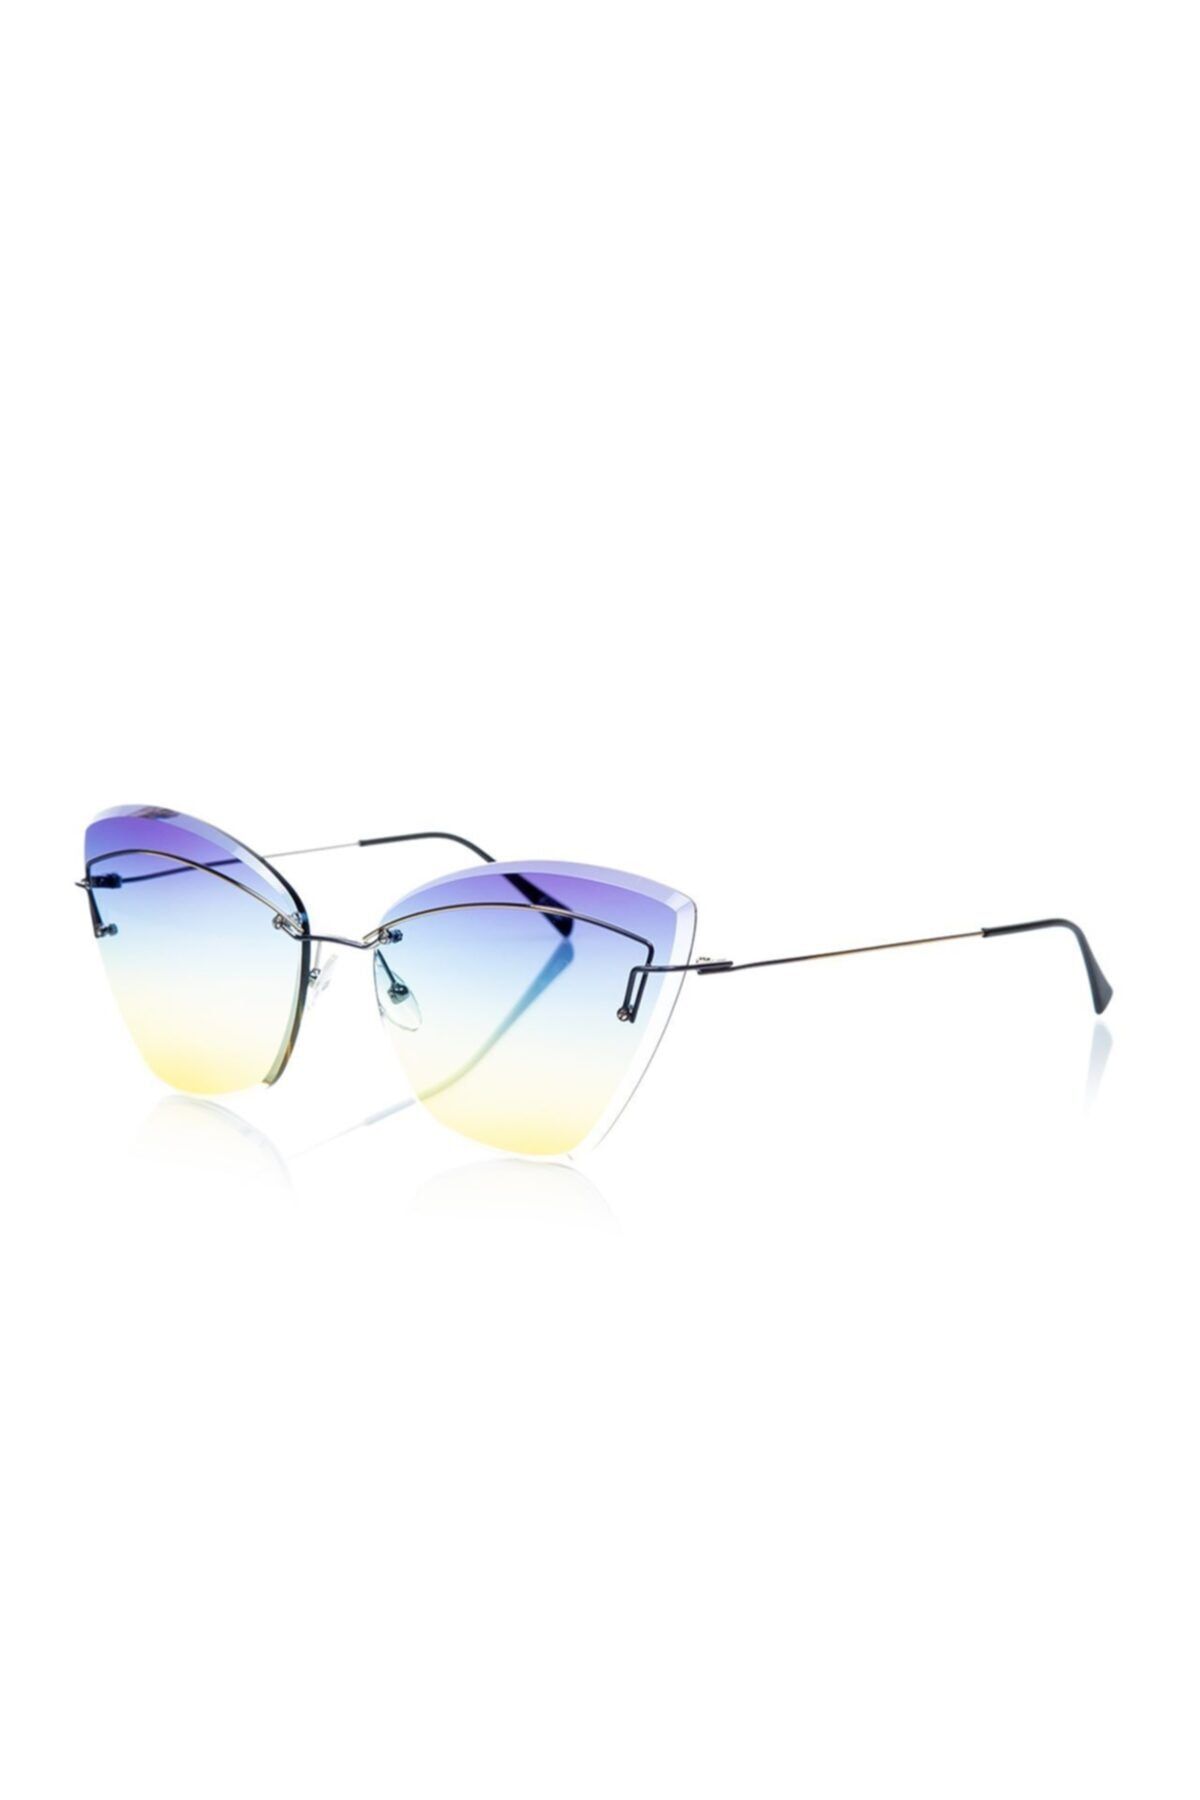 Flair Marka Flr 840 P15 C50 Cat Eye Titanyum Çerçeve Mavi Cam Kadın Güneş Gözlüğü